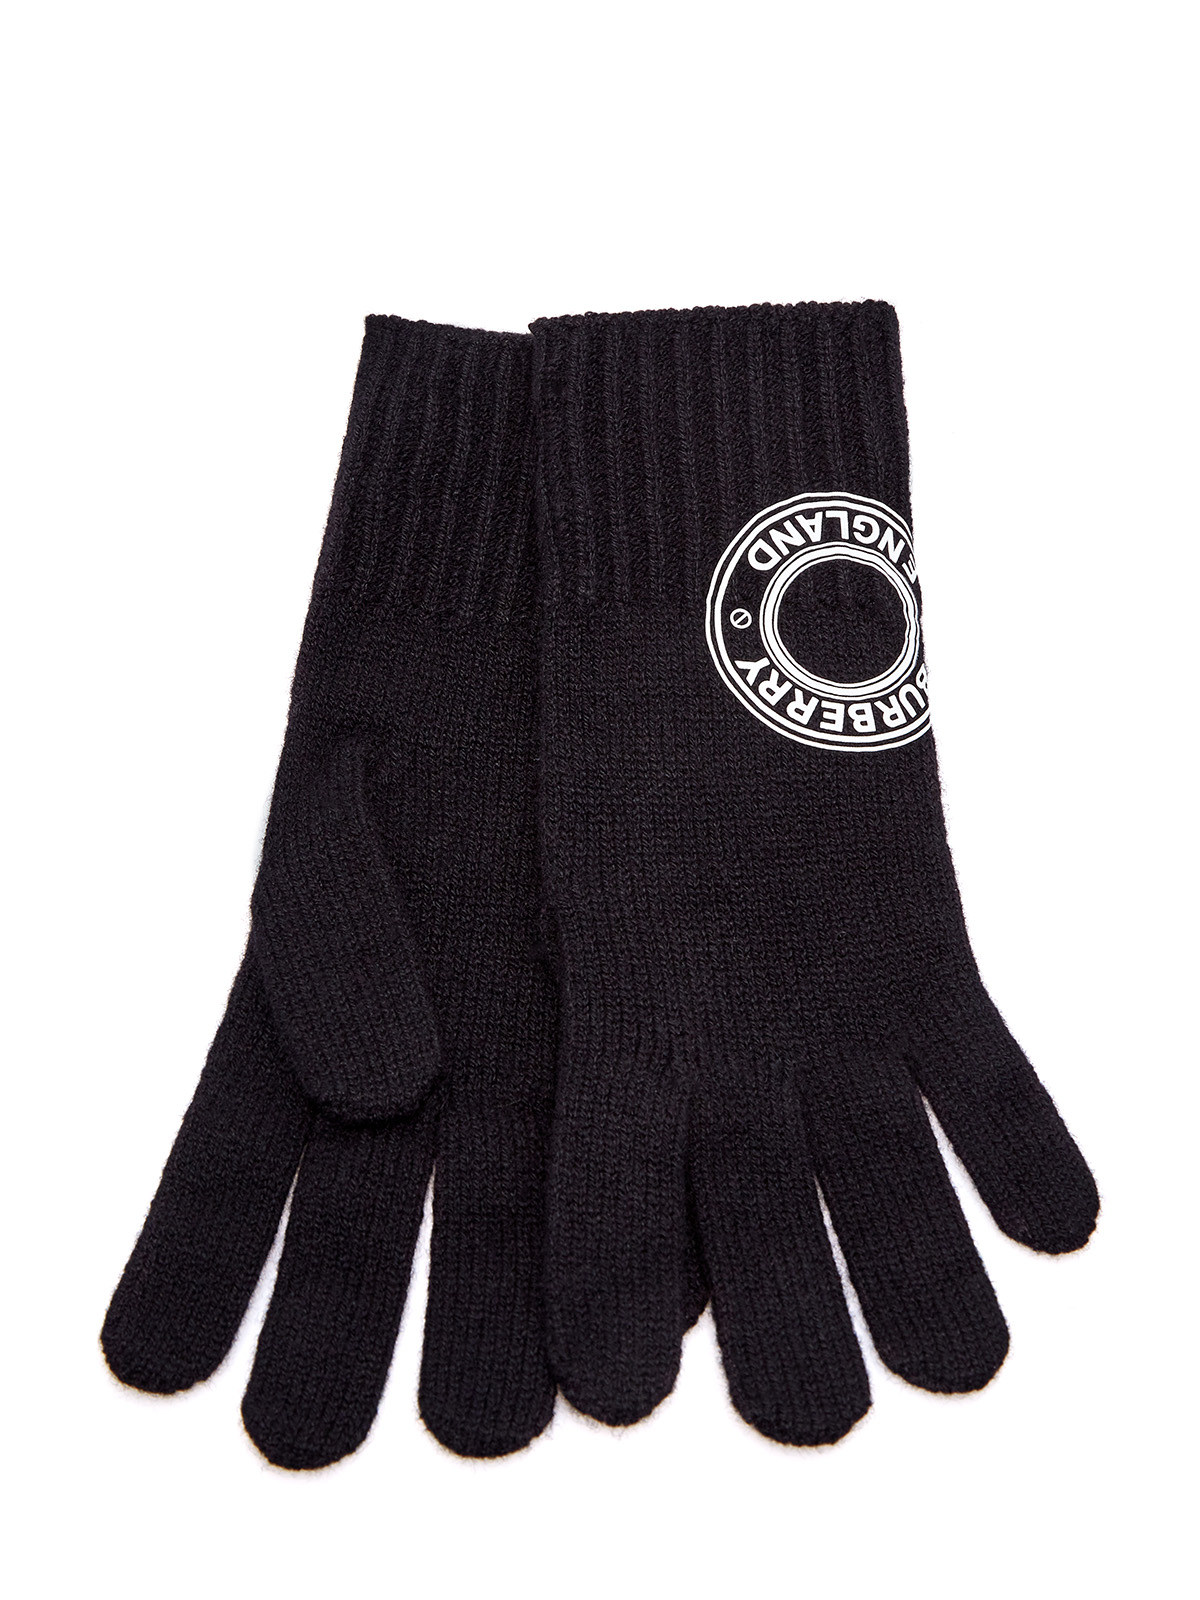 Кашемировые перчатки с контрастным макро-логотипом BURBERRY, цвет черный, размер M